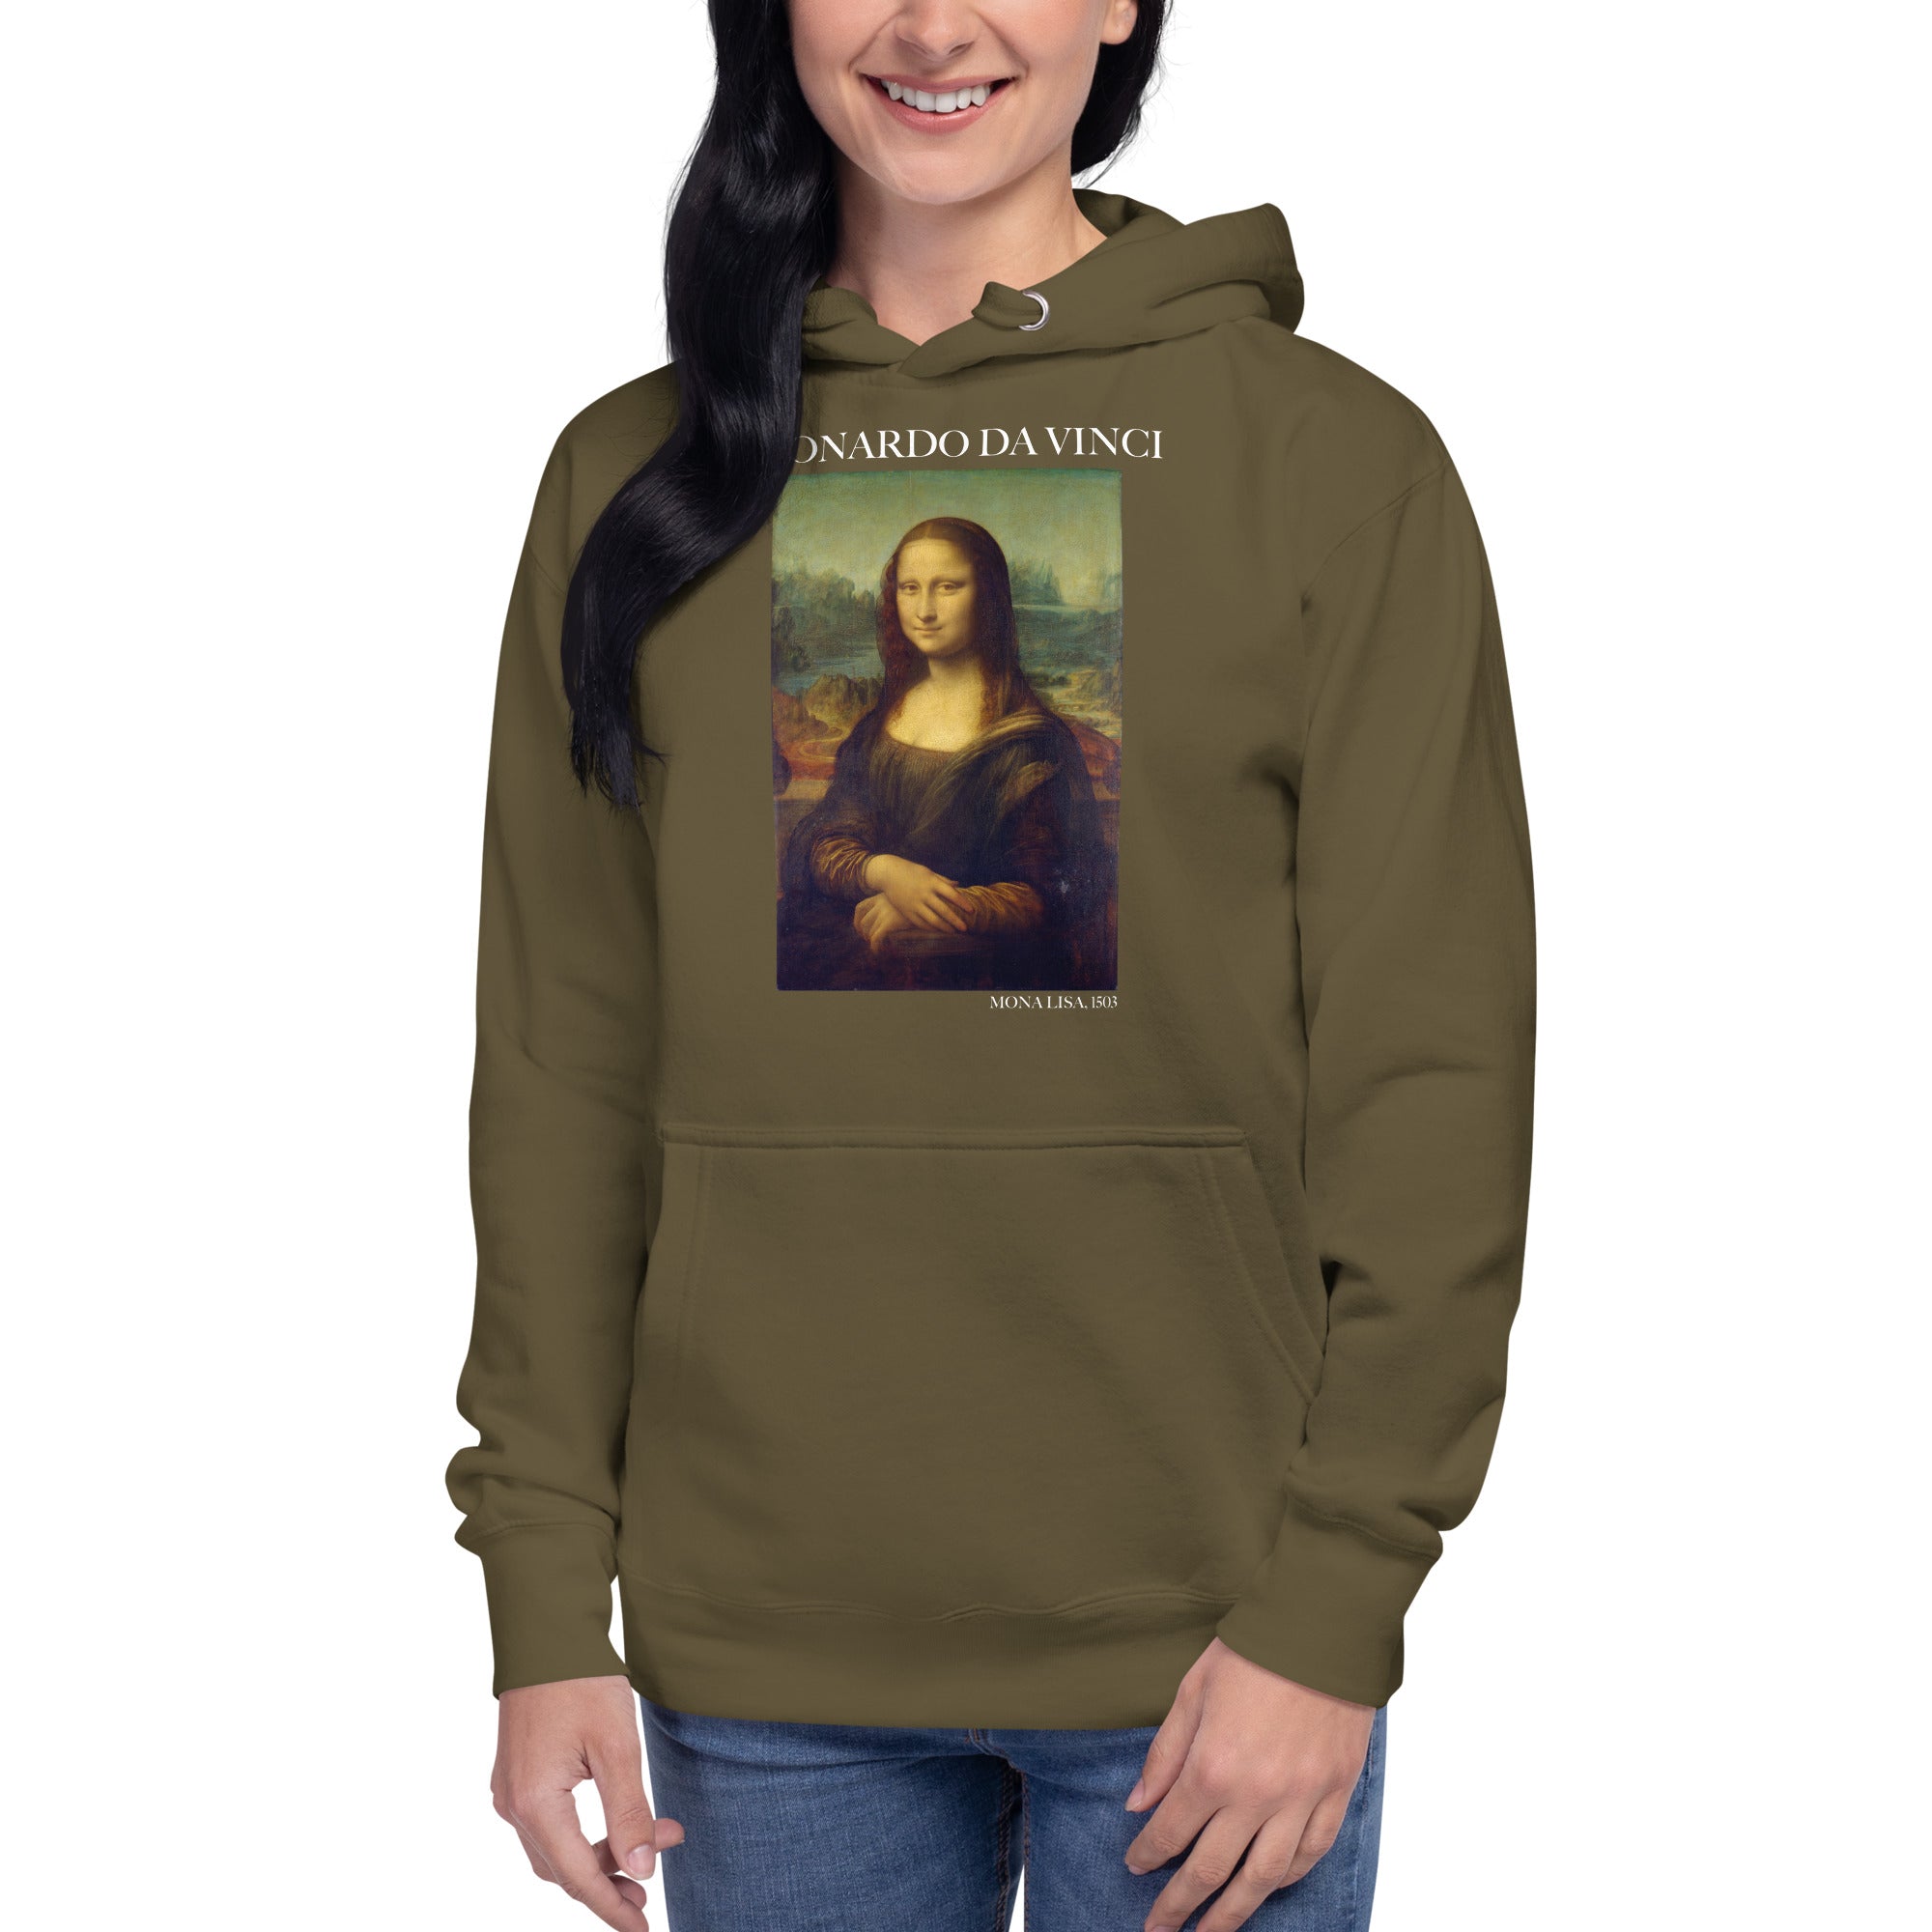 Leonardo da Vinci 'Mona Lisa' Famous Painting Hoodie | Unisex Premium Art Hoodie